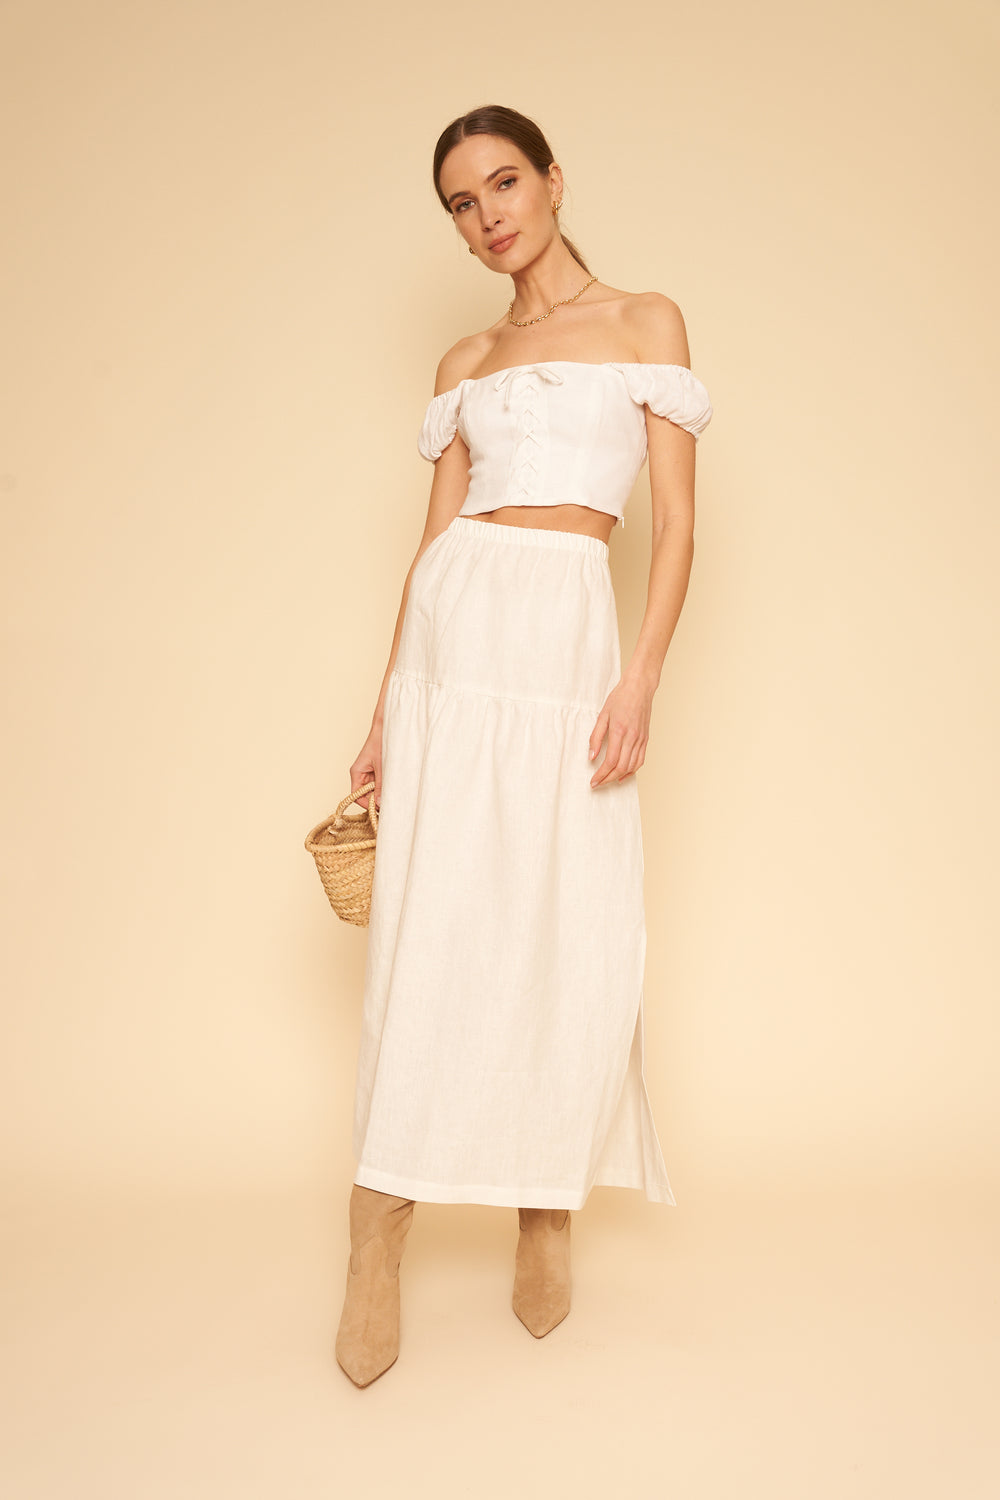 Millie Skirt/Dress in Coconut Linen - Whimsy & Row